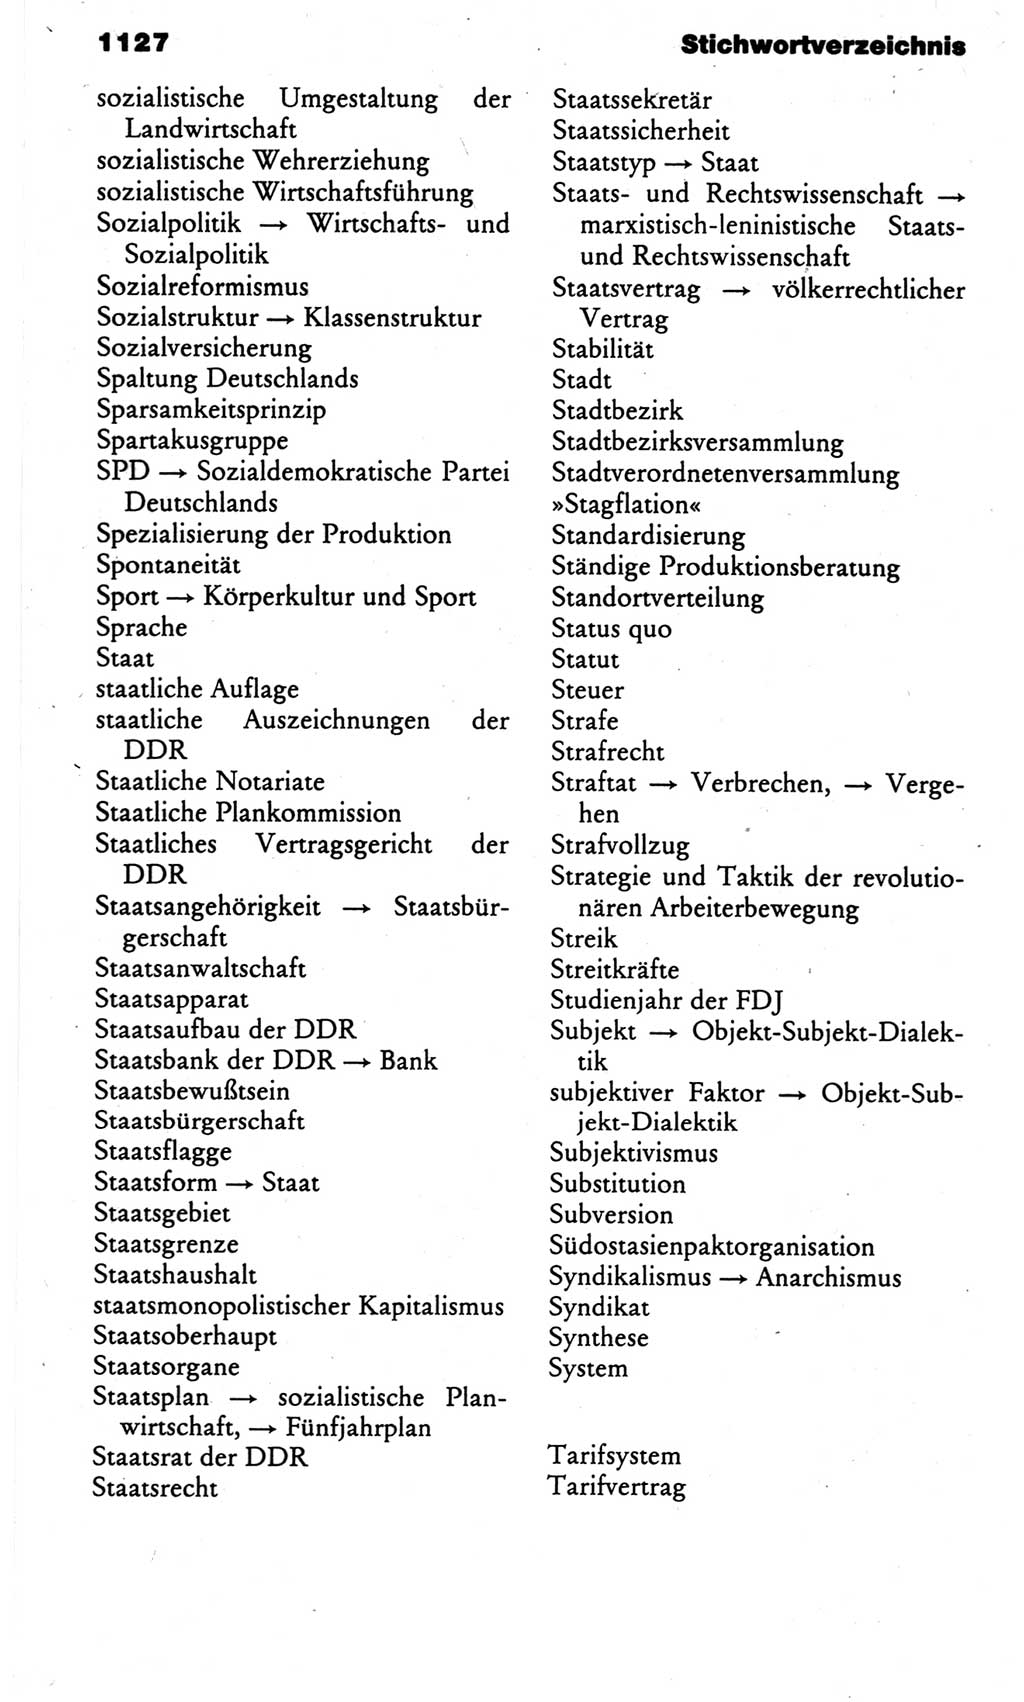 Kleines politisches Wörterbuch [Deutsche Demokratische Republik (DDR)] 1983, Seite 1127 (Kl. pol. Wb. DDR 1983, S. 1127)